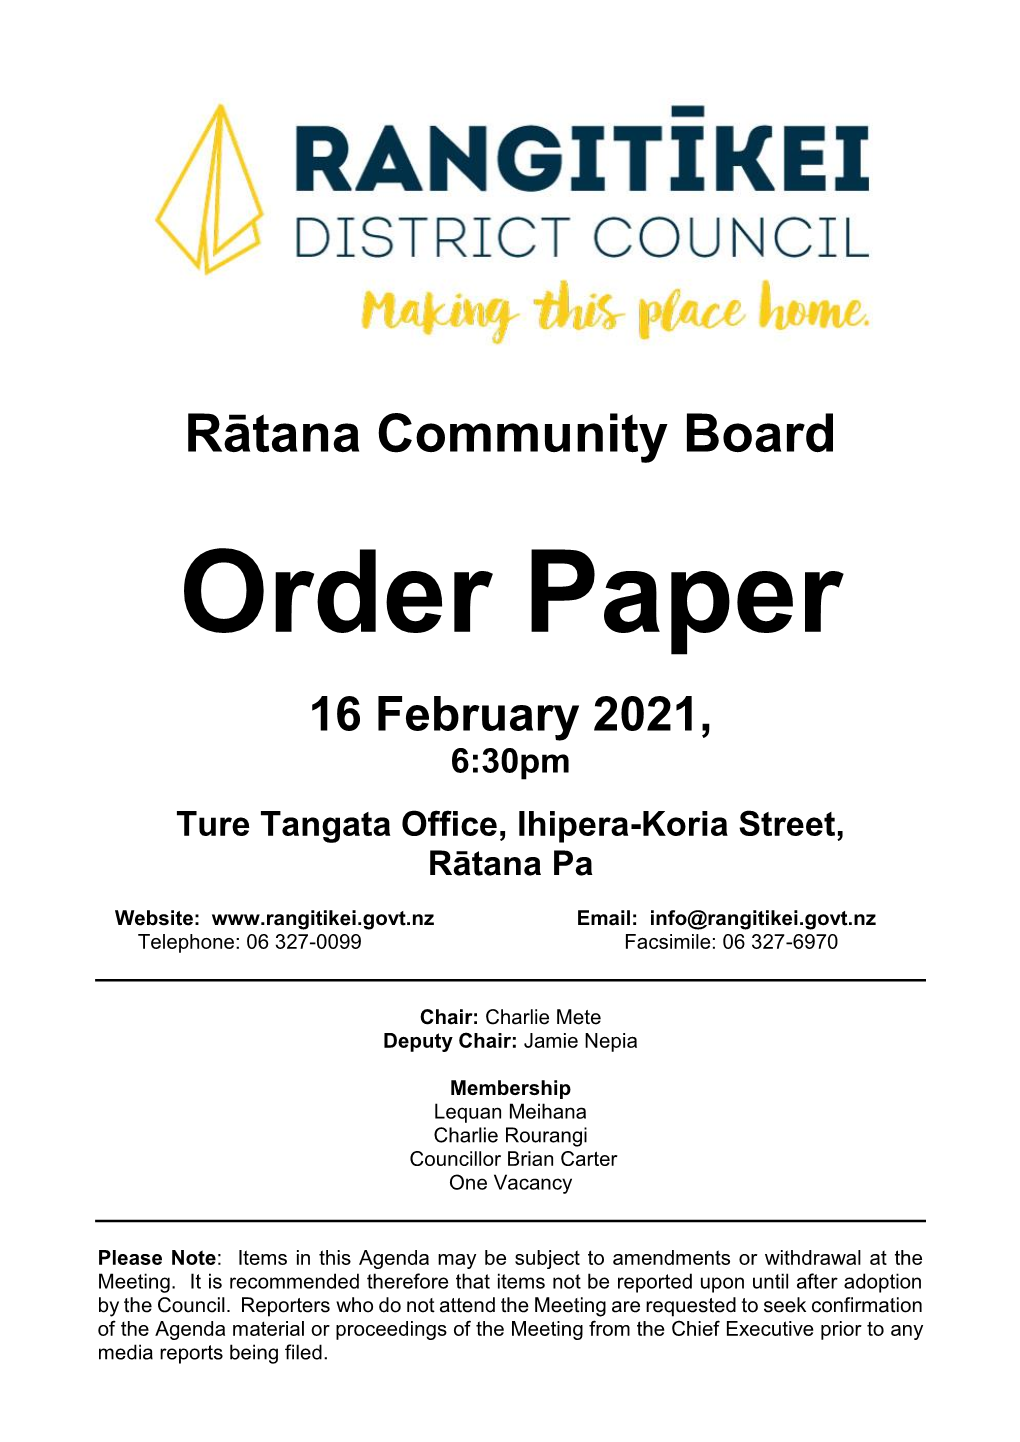 Ratana Community Board Agenda10 November 2020